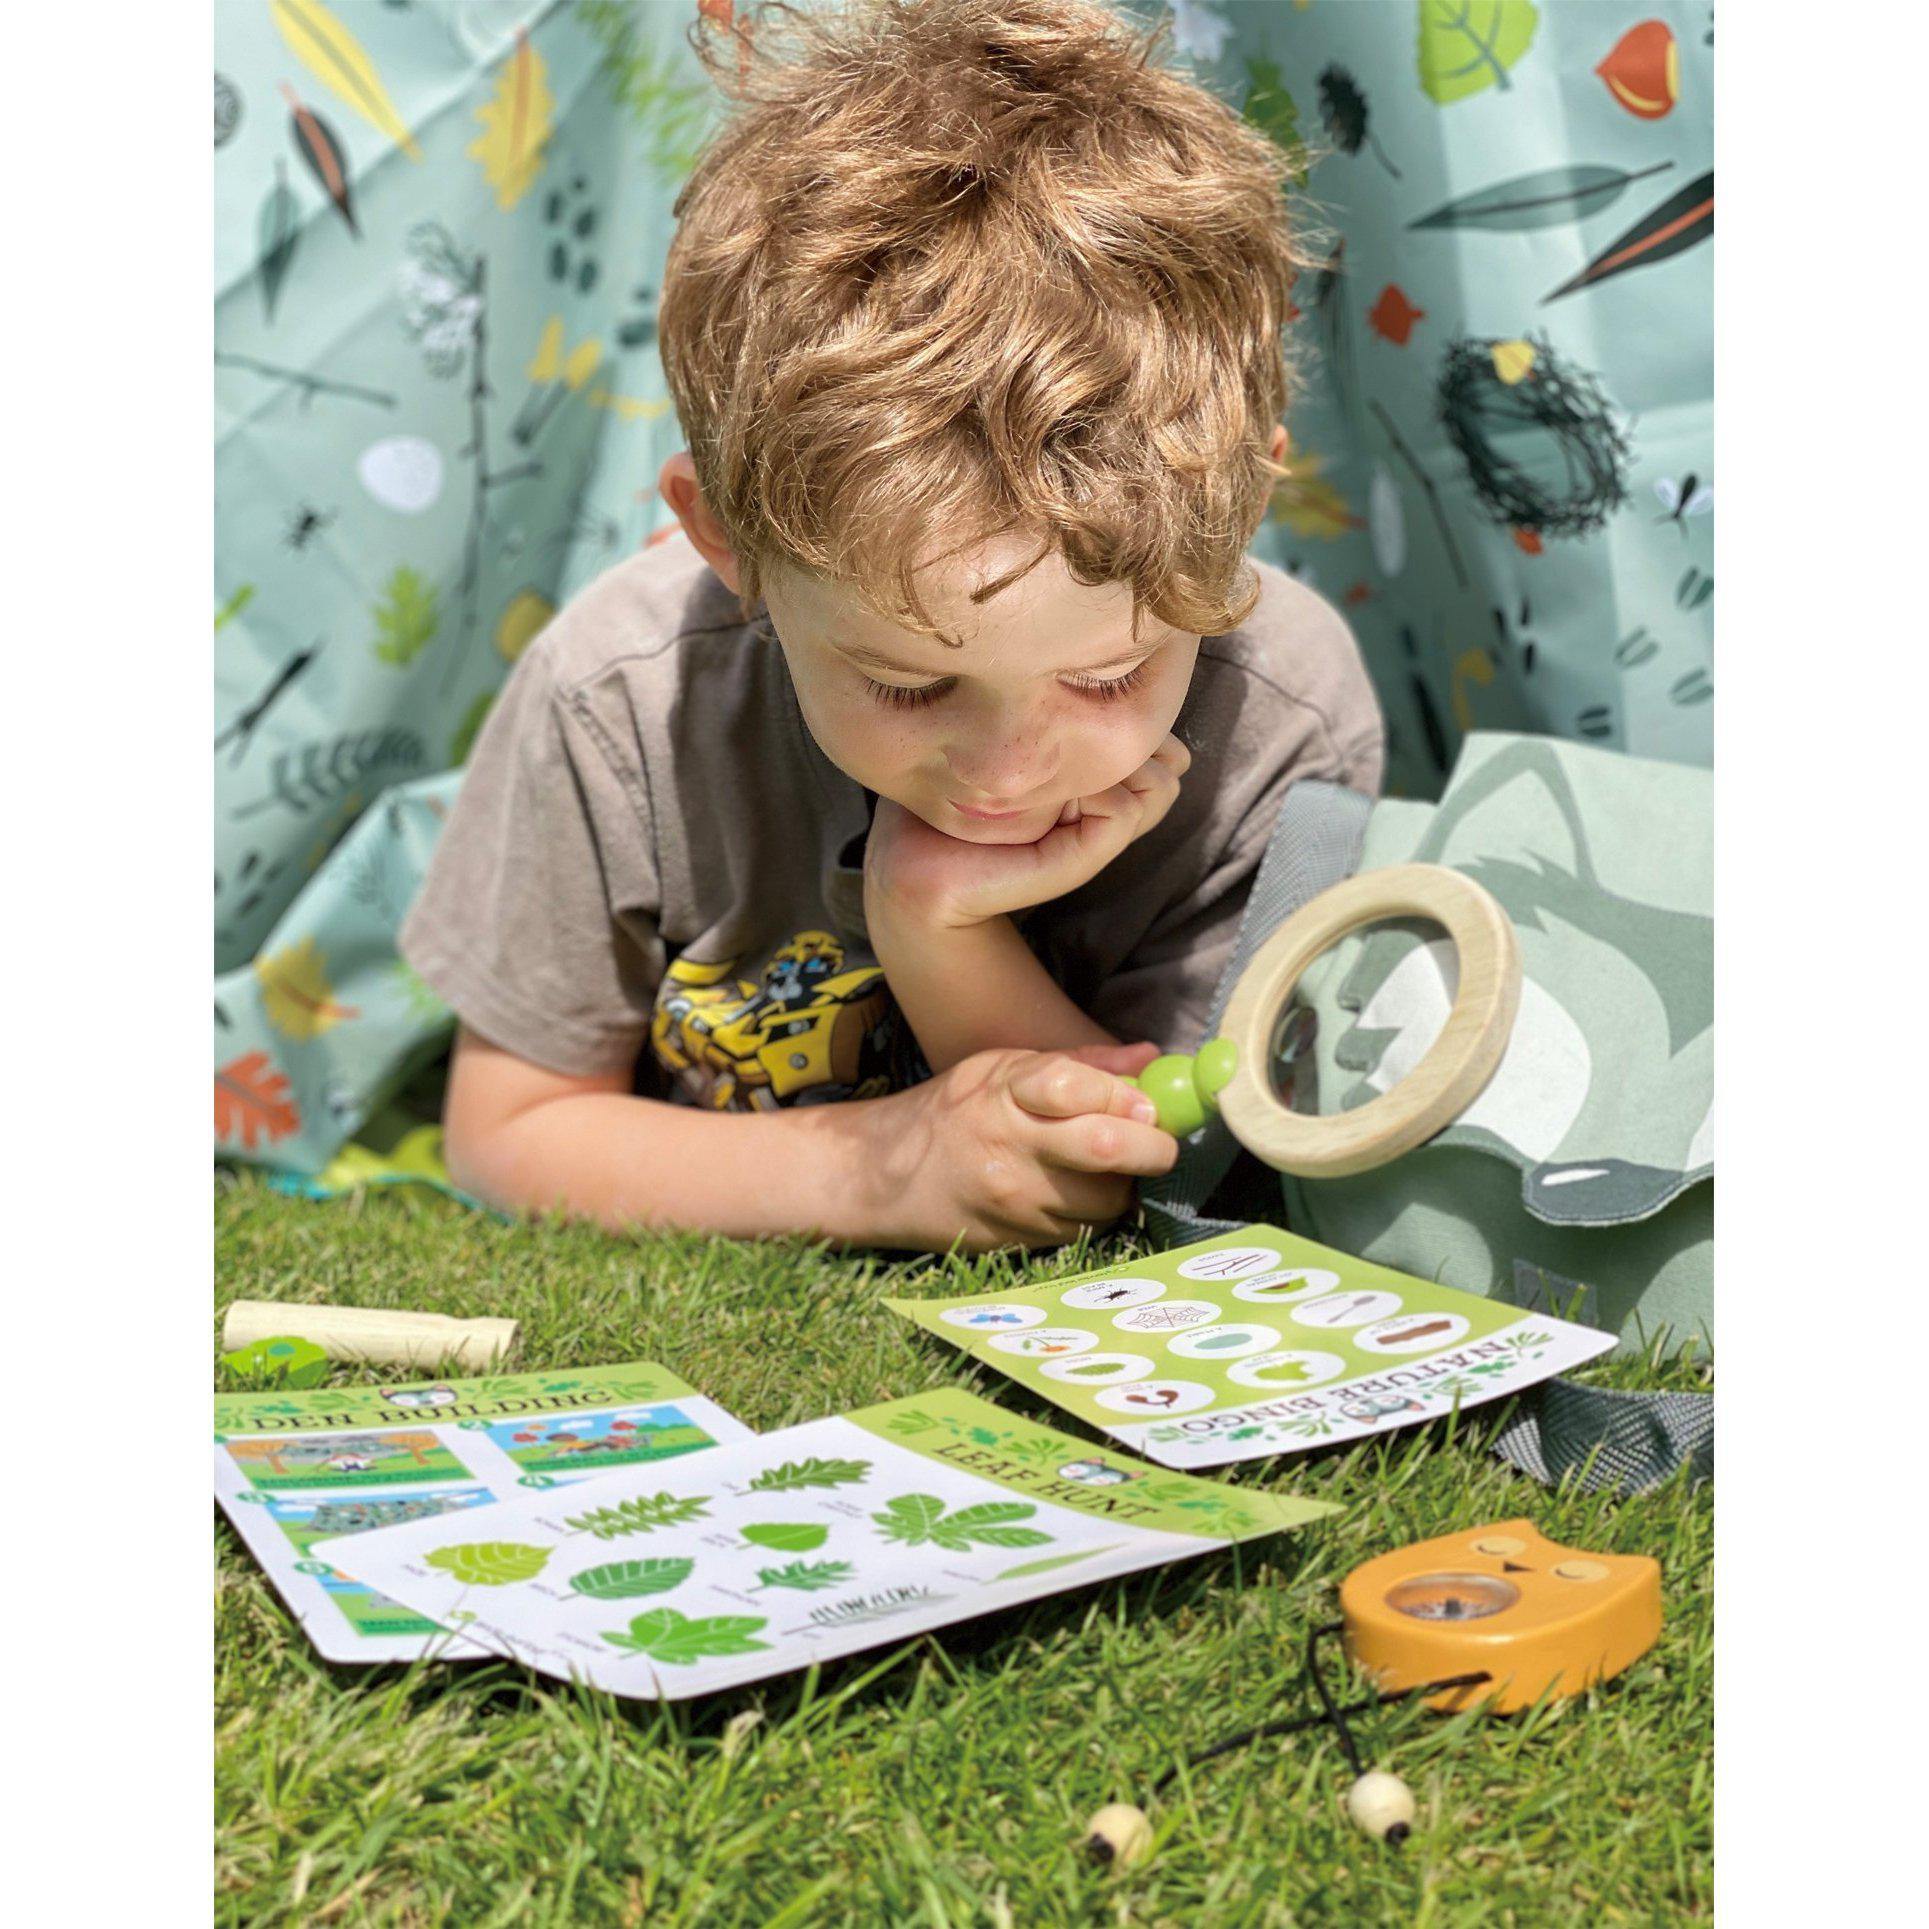 Erdei kiránduló készlet, prémium minőségű fából - Forest Trail Kit - 10 darab - Tender Leaf Toys-Tender Leaf Toys-11-Játszma.ro - A maradandó élmények boltja